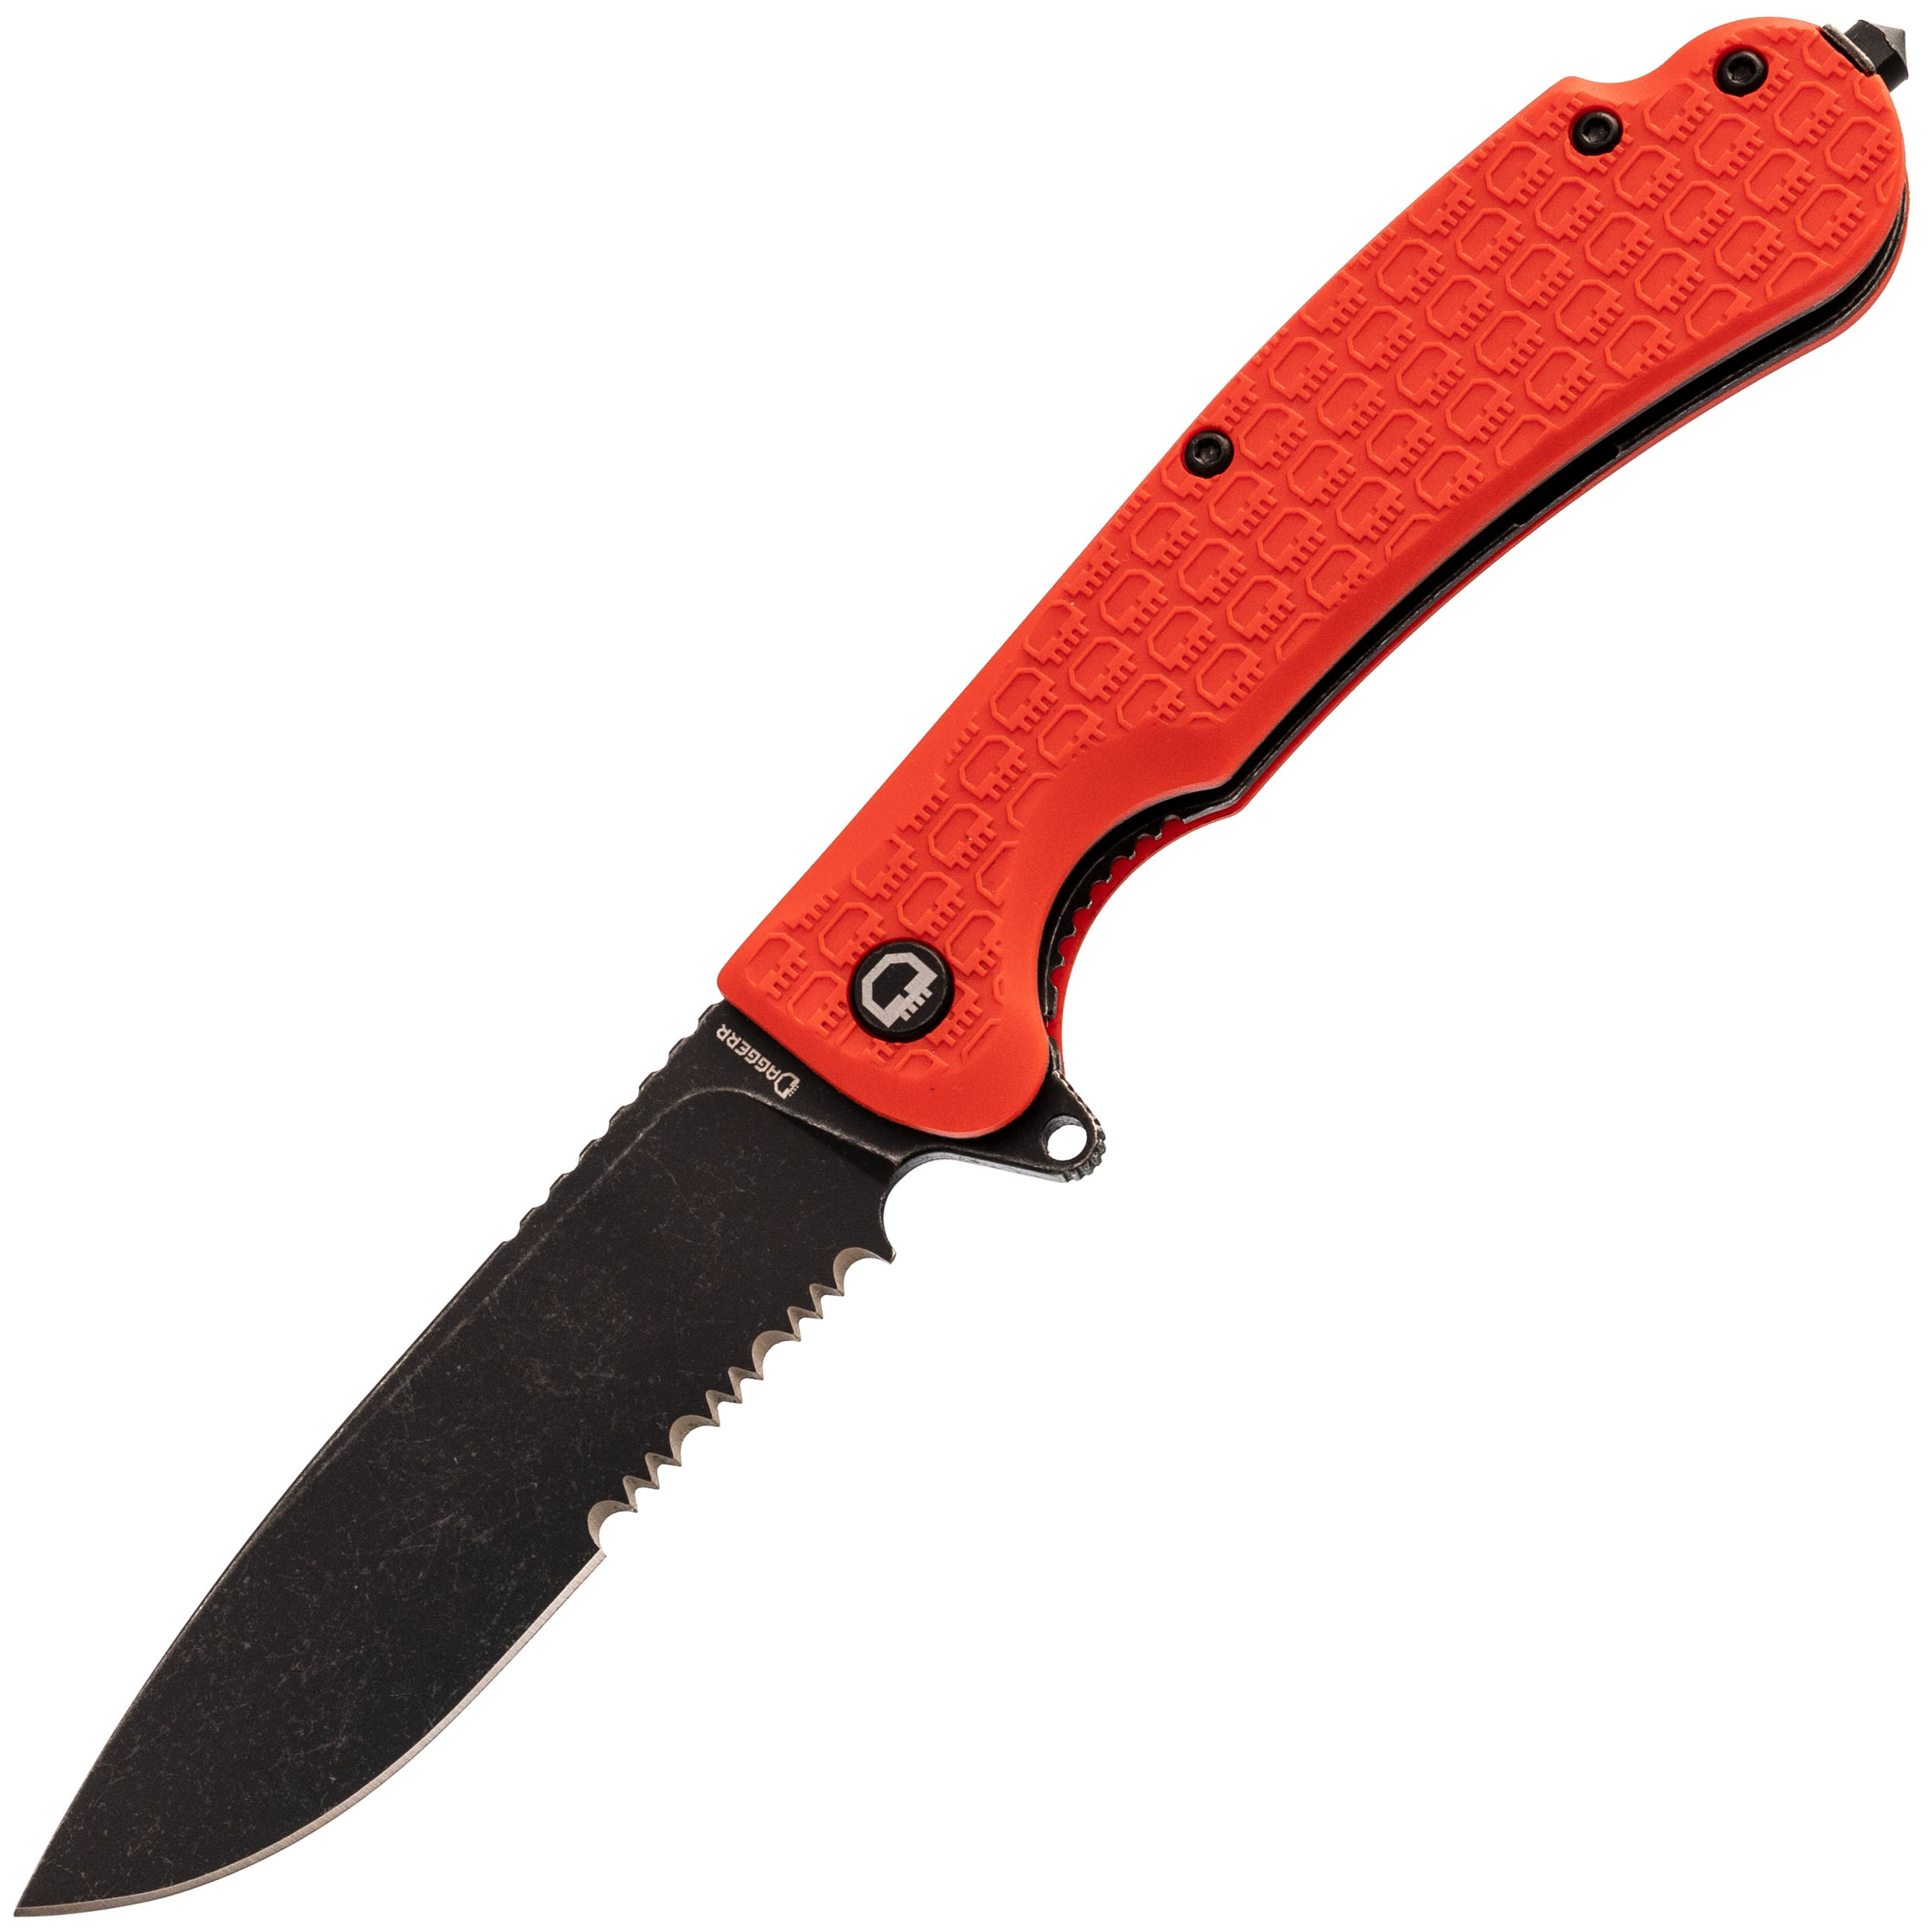 Складной нож Daggerr Wocket Orange BW Serrated, сталь 8Cr14MoV, рукоять FRN складной нож dagger parrot all black сталь vg10 рукоять g10